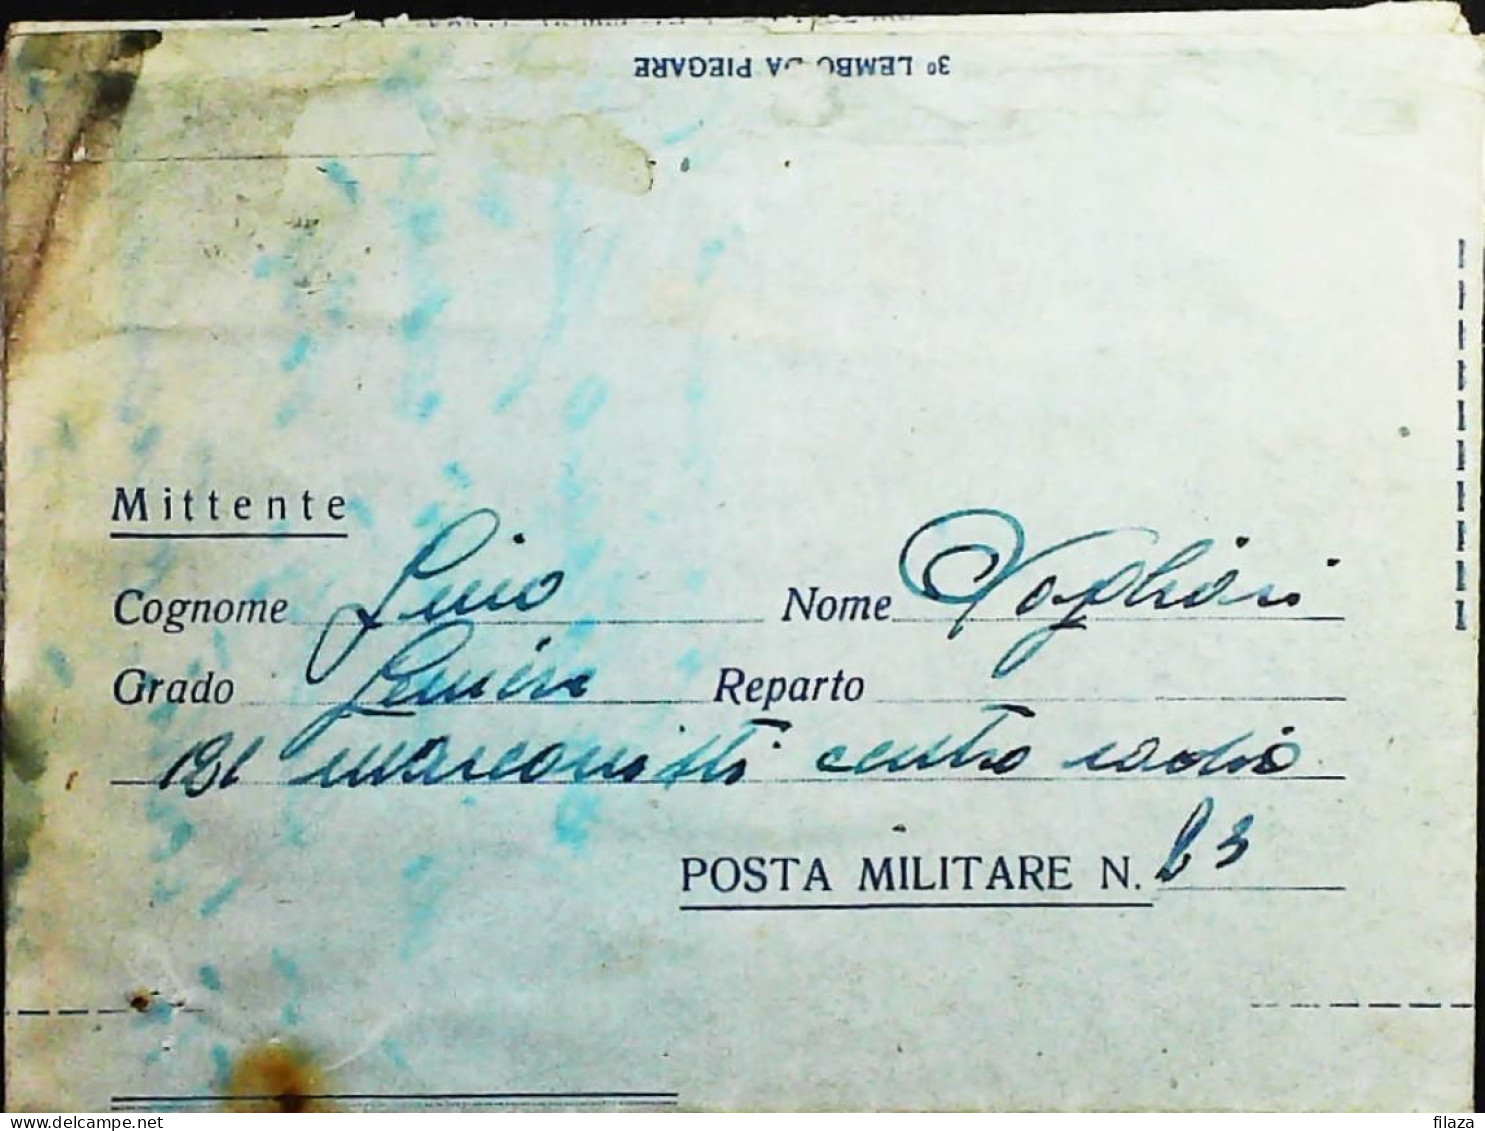 POSTA MILITARE ITALIA IN GRECIA  - WWII WW2 - S6791 - Military Mail (PM)